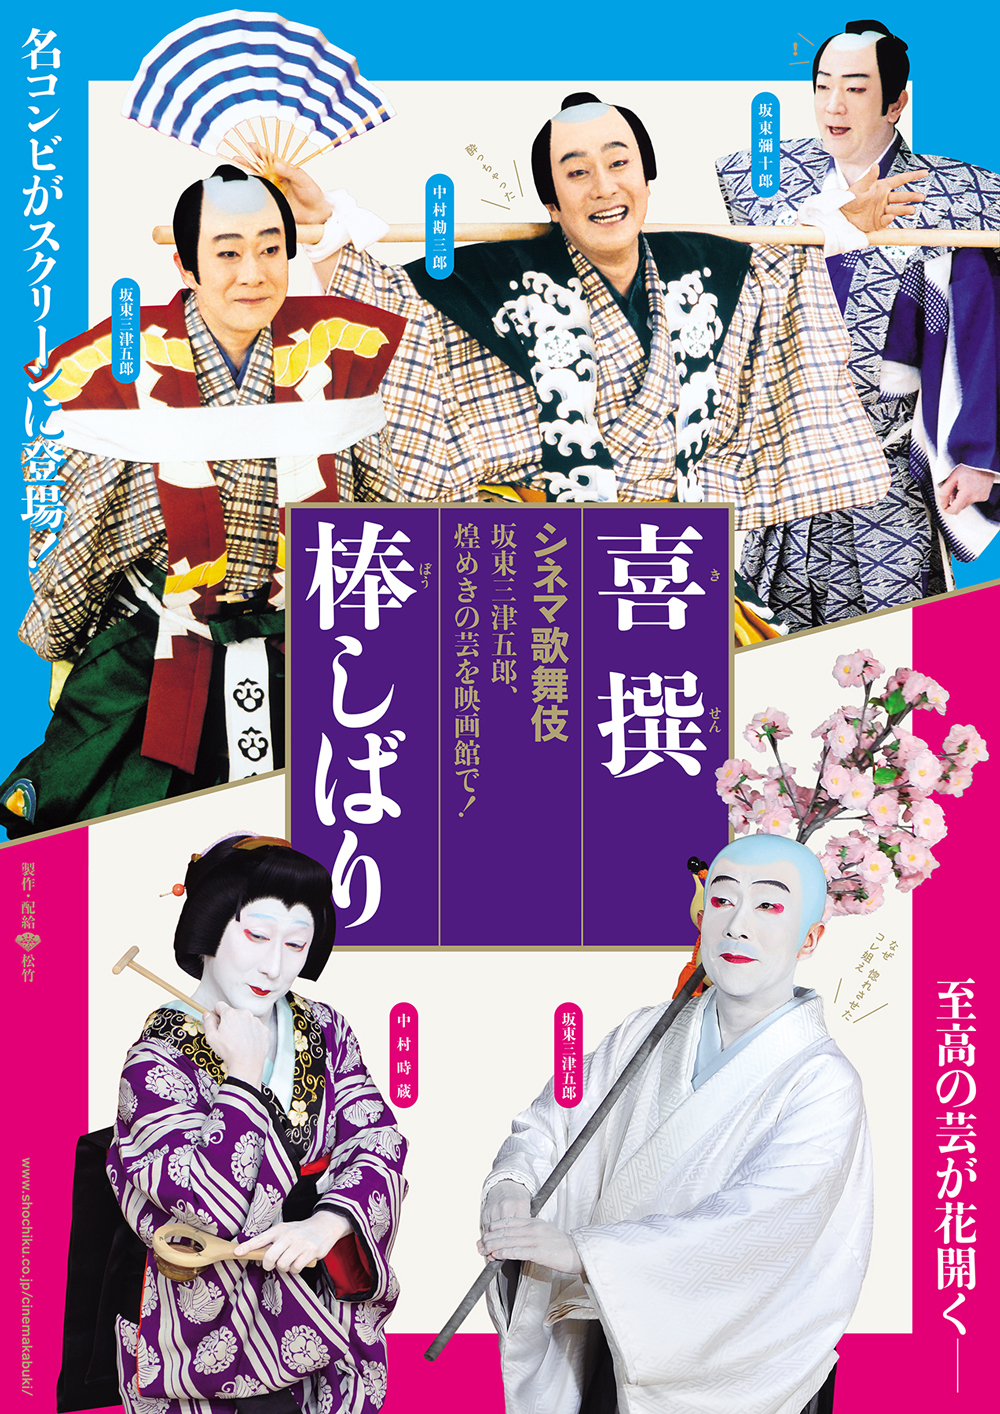 「シネマ歌舞伎イヤホンガイド」アプリ、《月イチ歌舞伎》に合わせて音声ガイドをリリース中